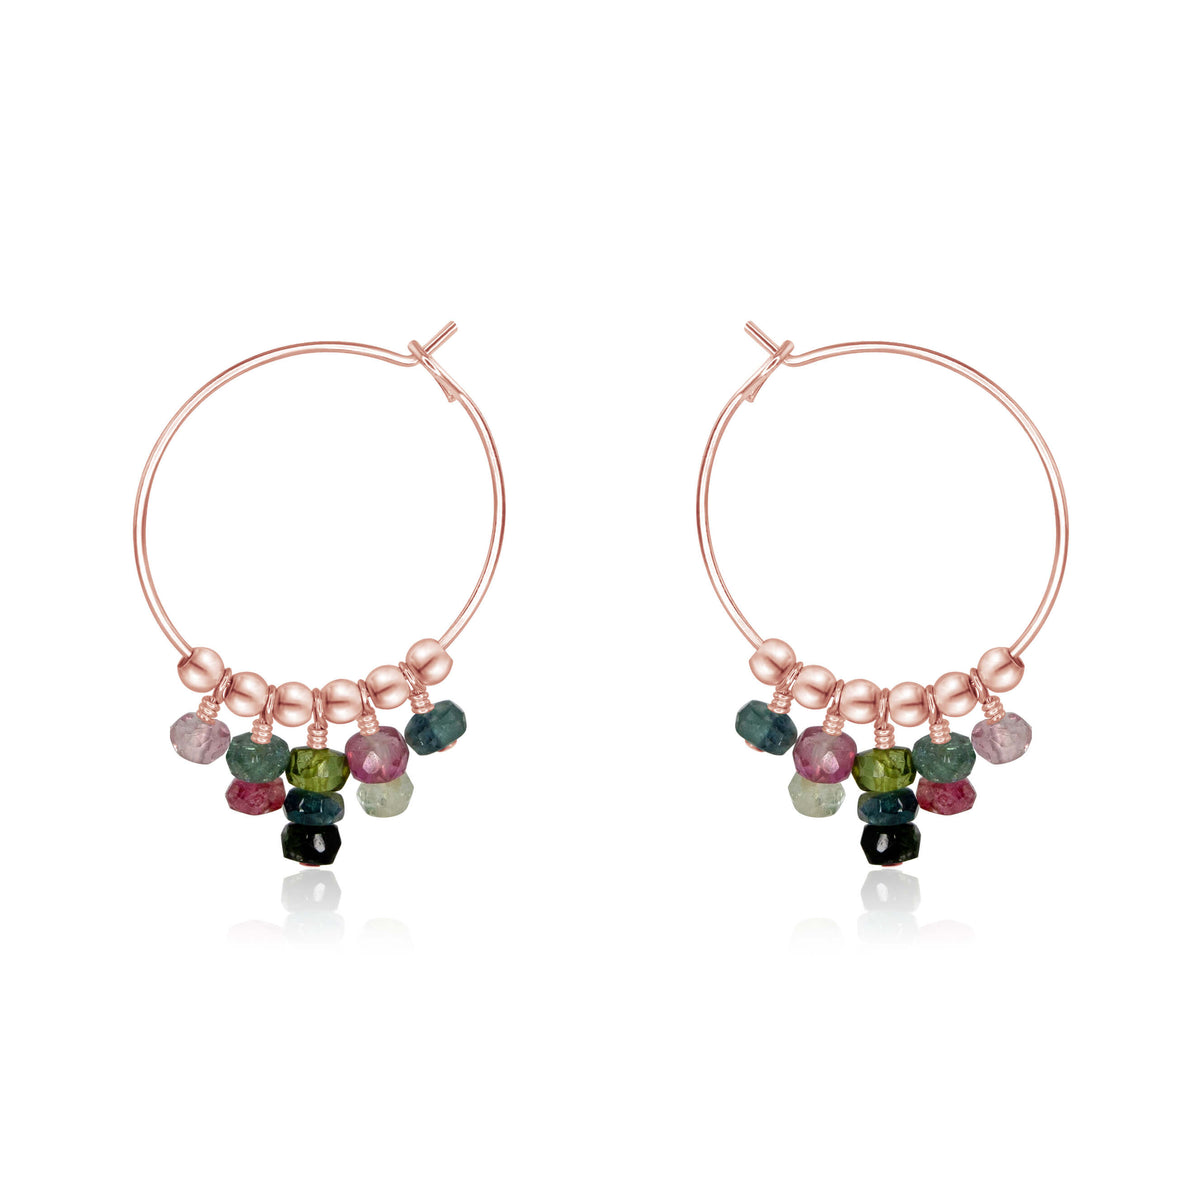 Hoop Earrings - Tourmaline - 14K Rose Gold Fill - Luna Tide Handmade Jewellery